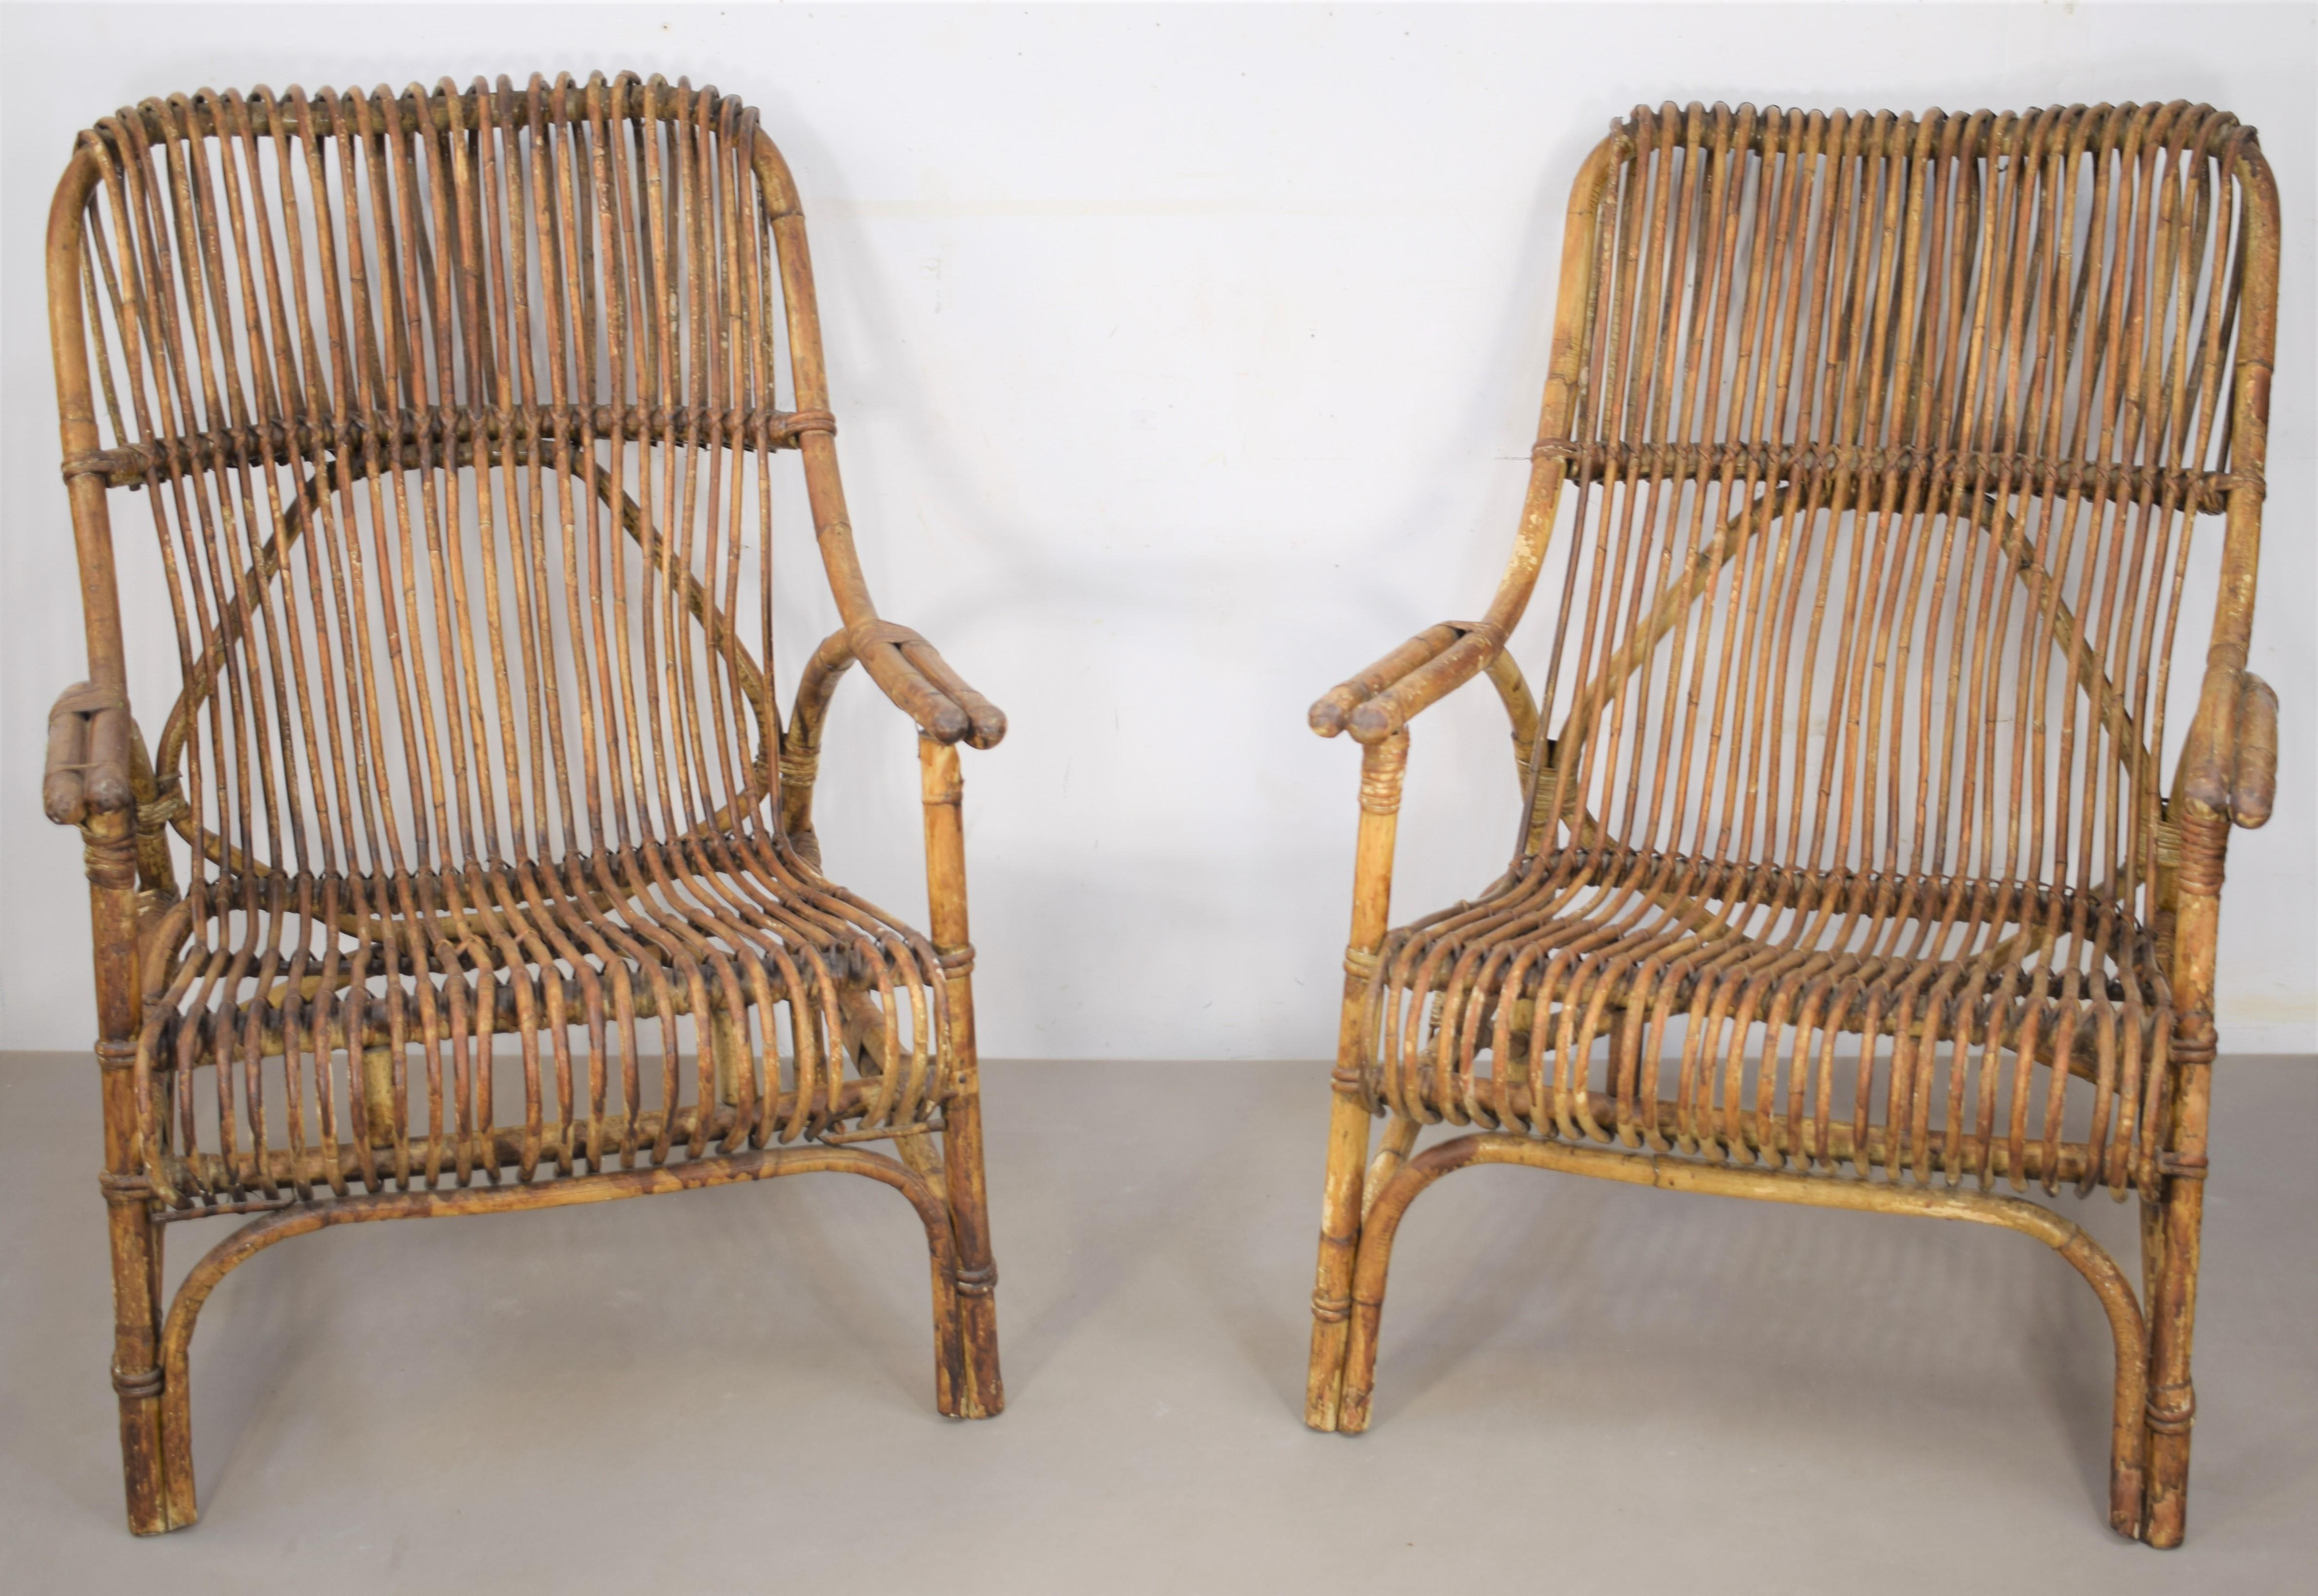 Paire de fauteuils italiens en bambou, années 1960.
Dimensions : H=95cm ; L=90 cm ; P=85 cm ; Hauteur du siège =40 cm : H=95cm ; L= 90 cm ; P=85 cm ; Hauteur assise =40.